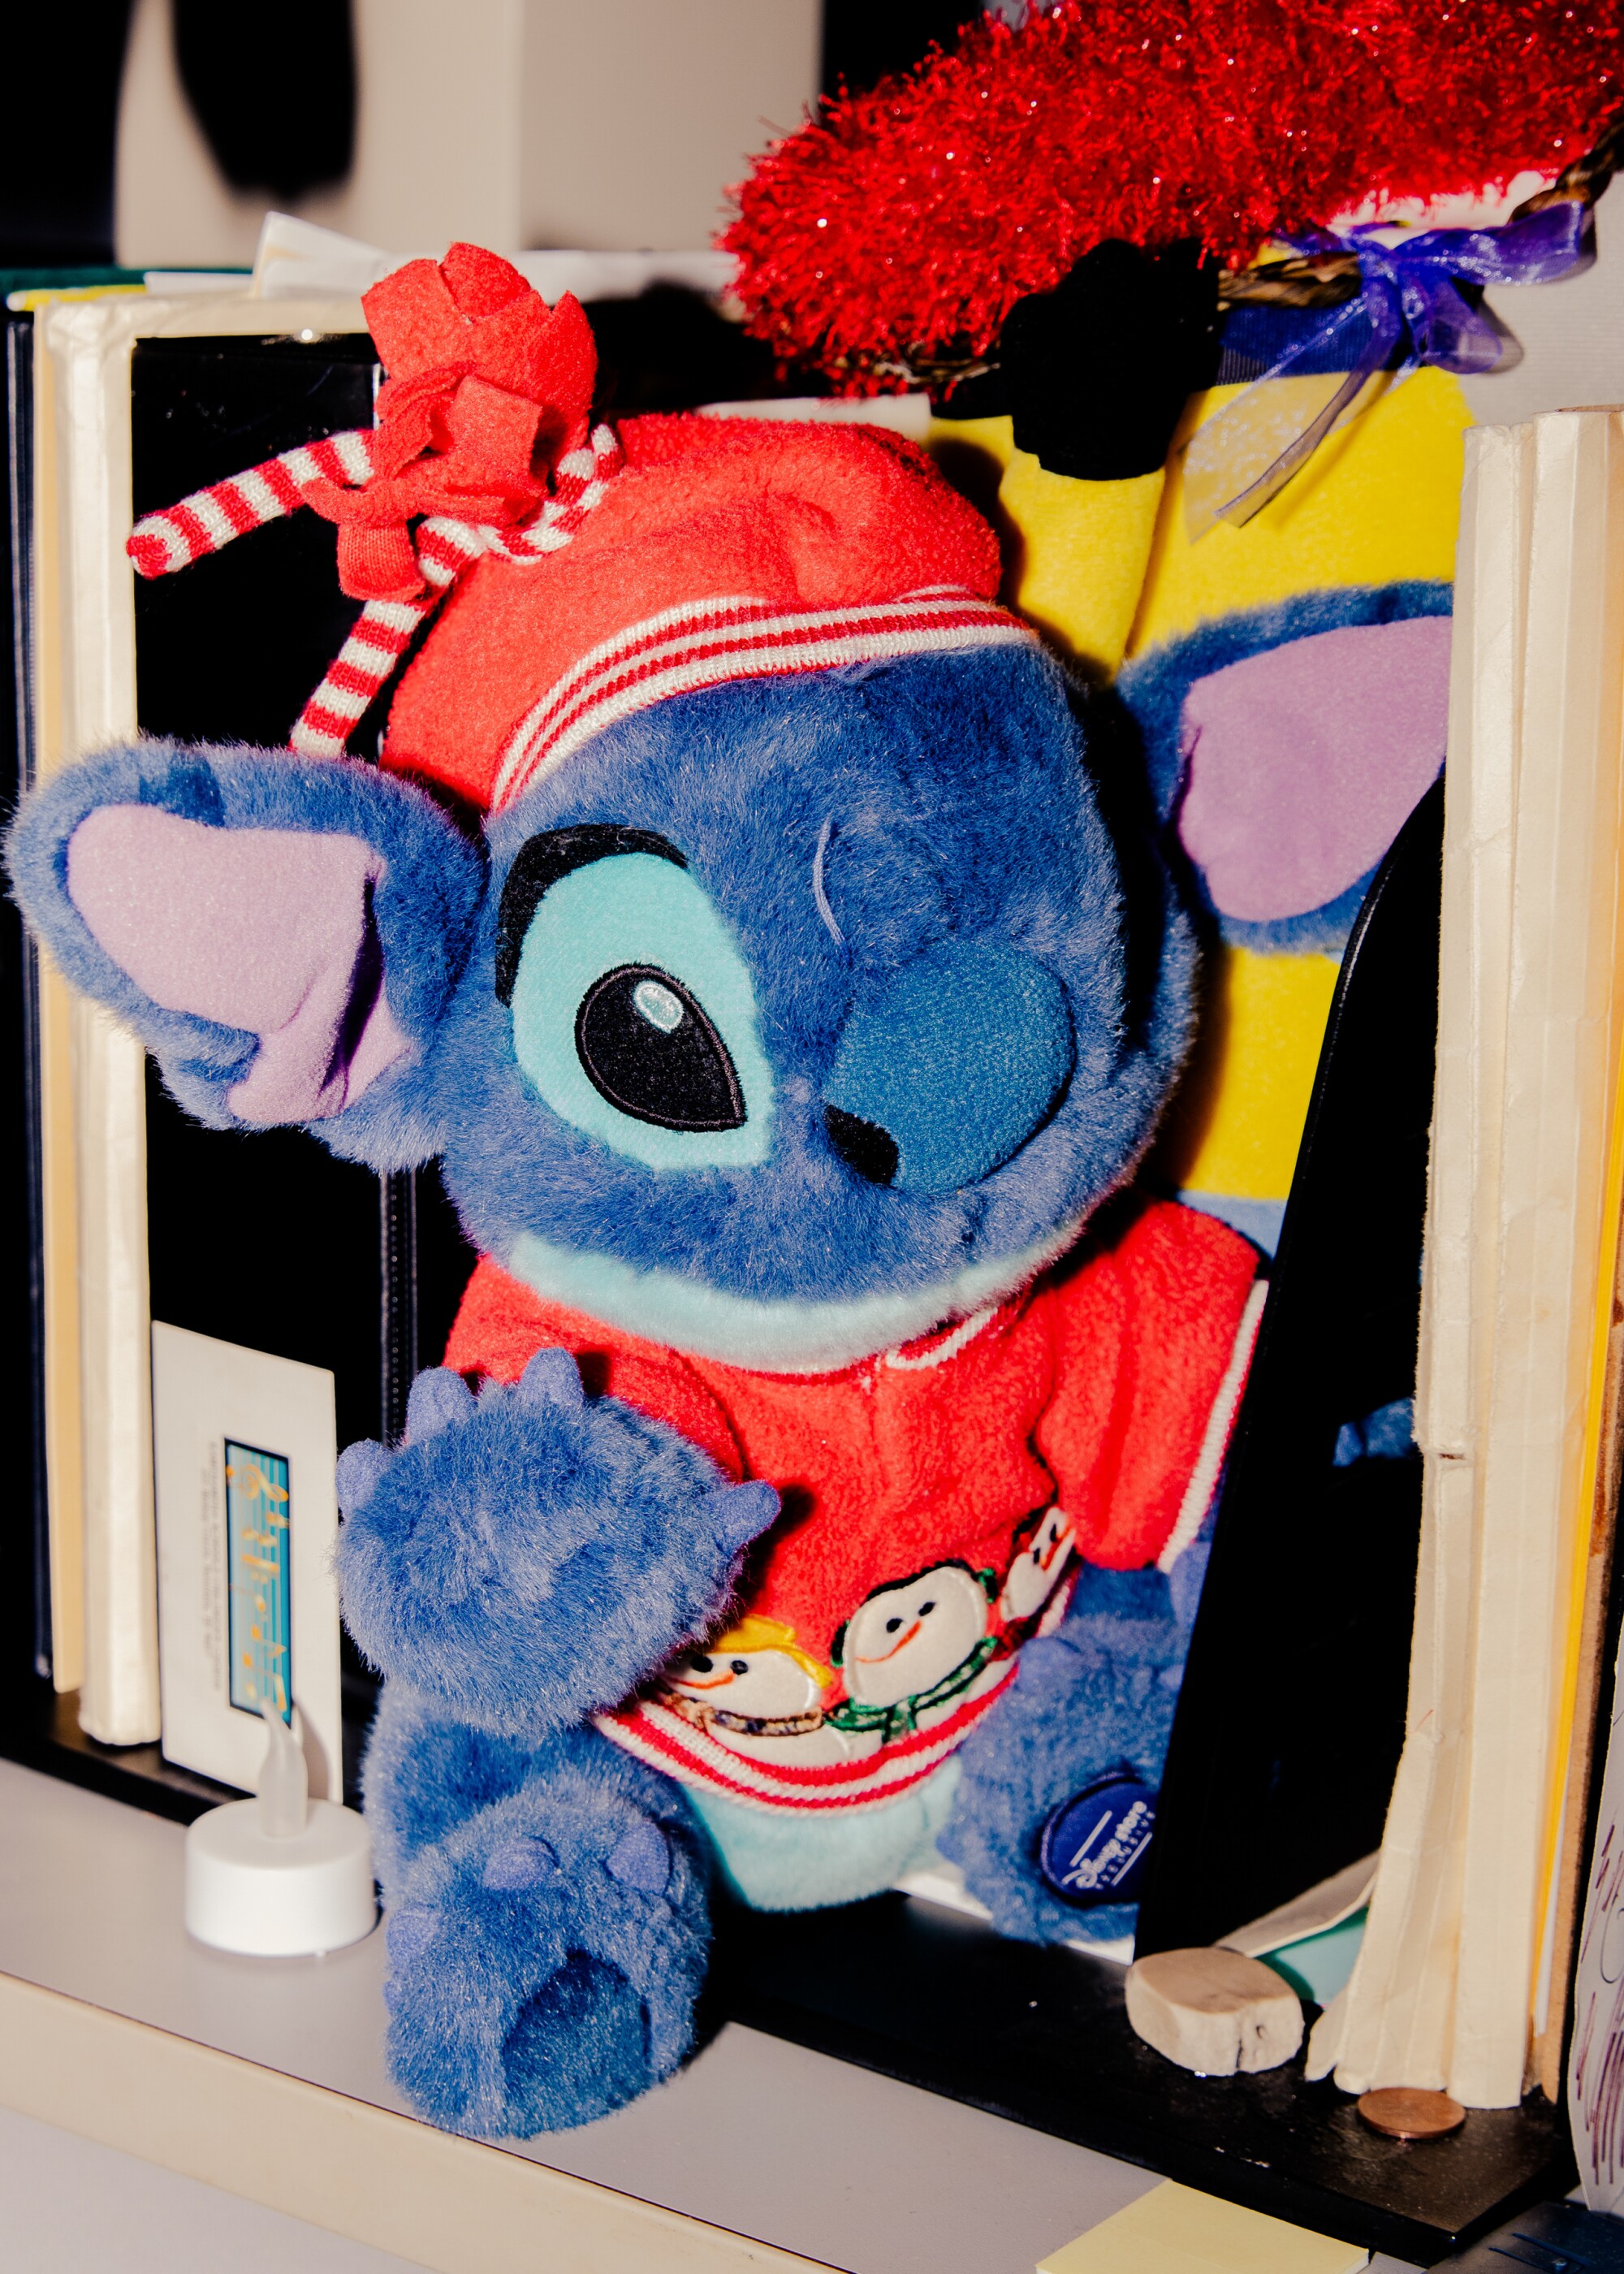 A collection of "Lilo & Stitch" memorabilia in Kumu Bright's classroom.